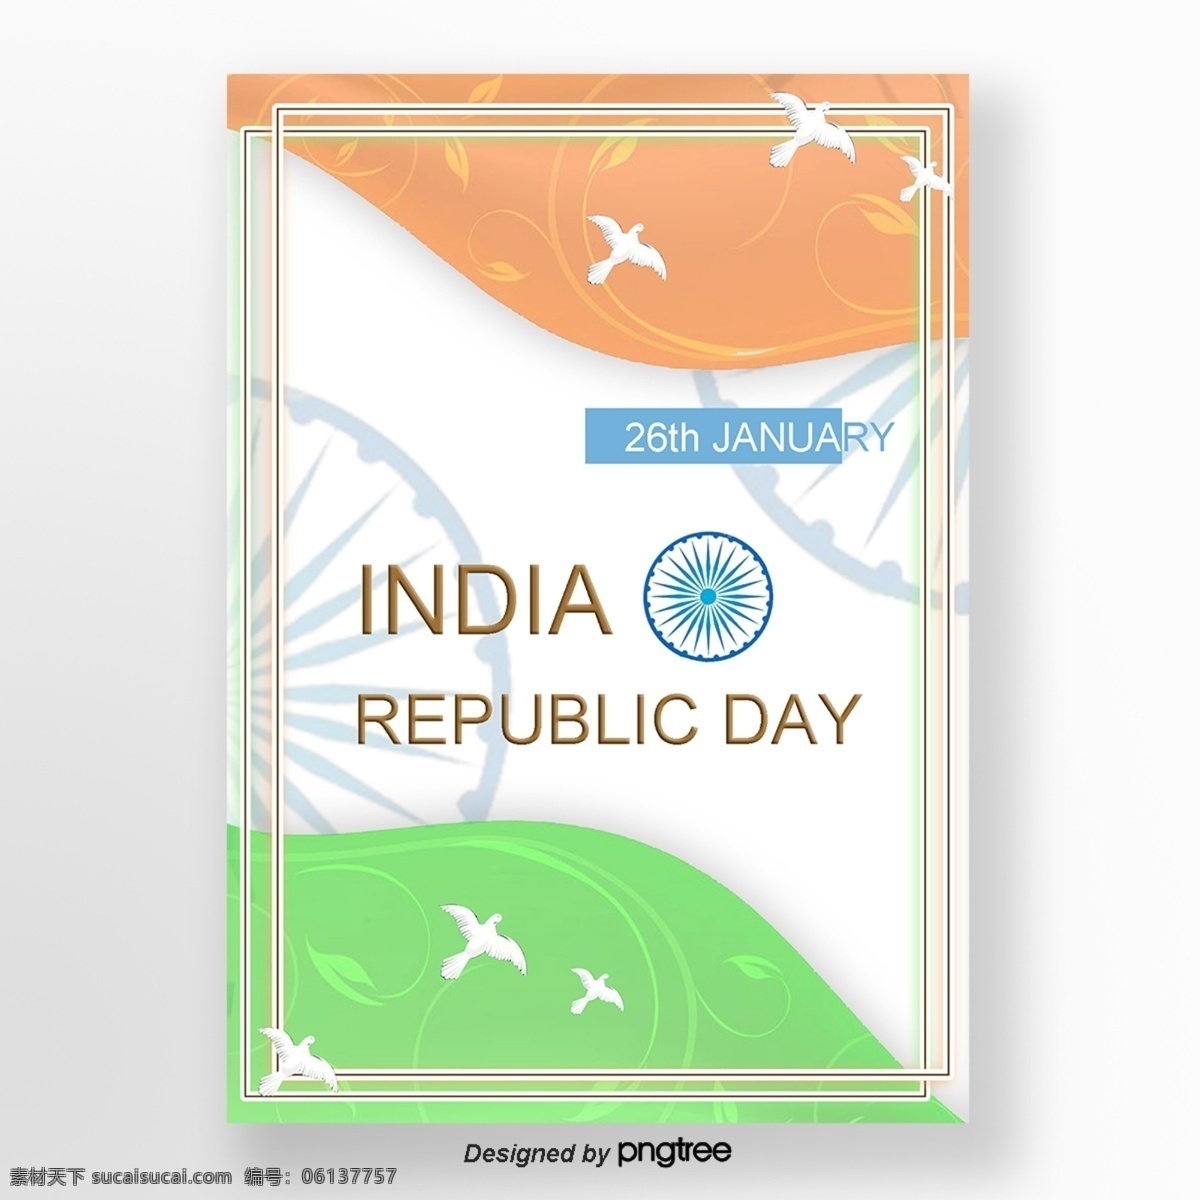 印度共和国 日本 简单 新鲜 国旗 和平 元素 海报 底部 和平鸽 旗帜颜色